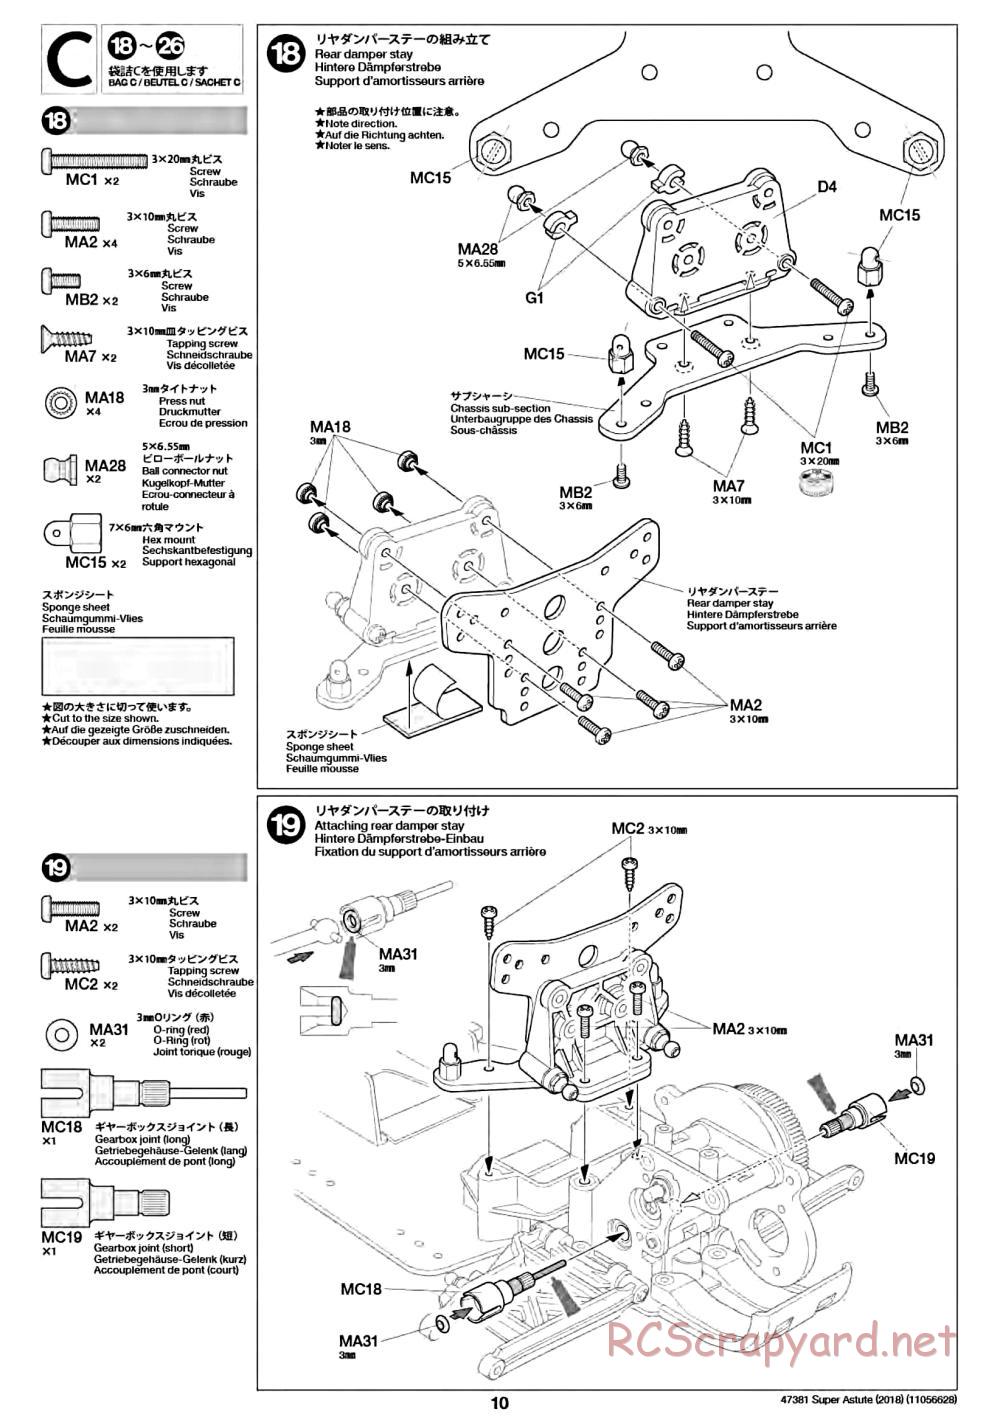 Tamiya - Super Astute (2018) Chassis - Manual - Page 10